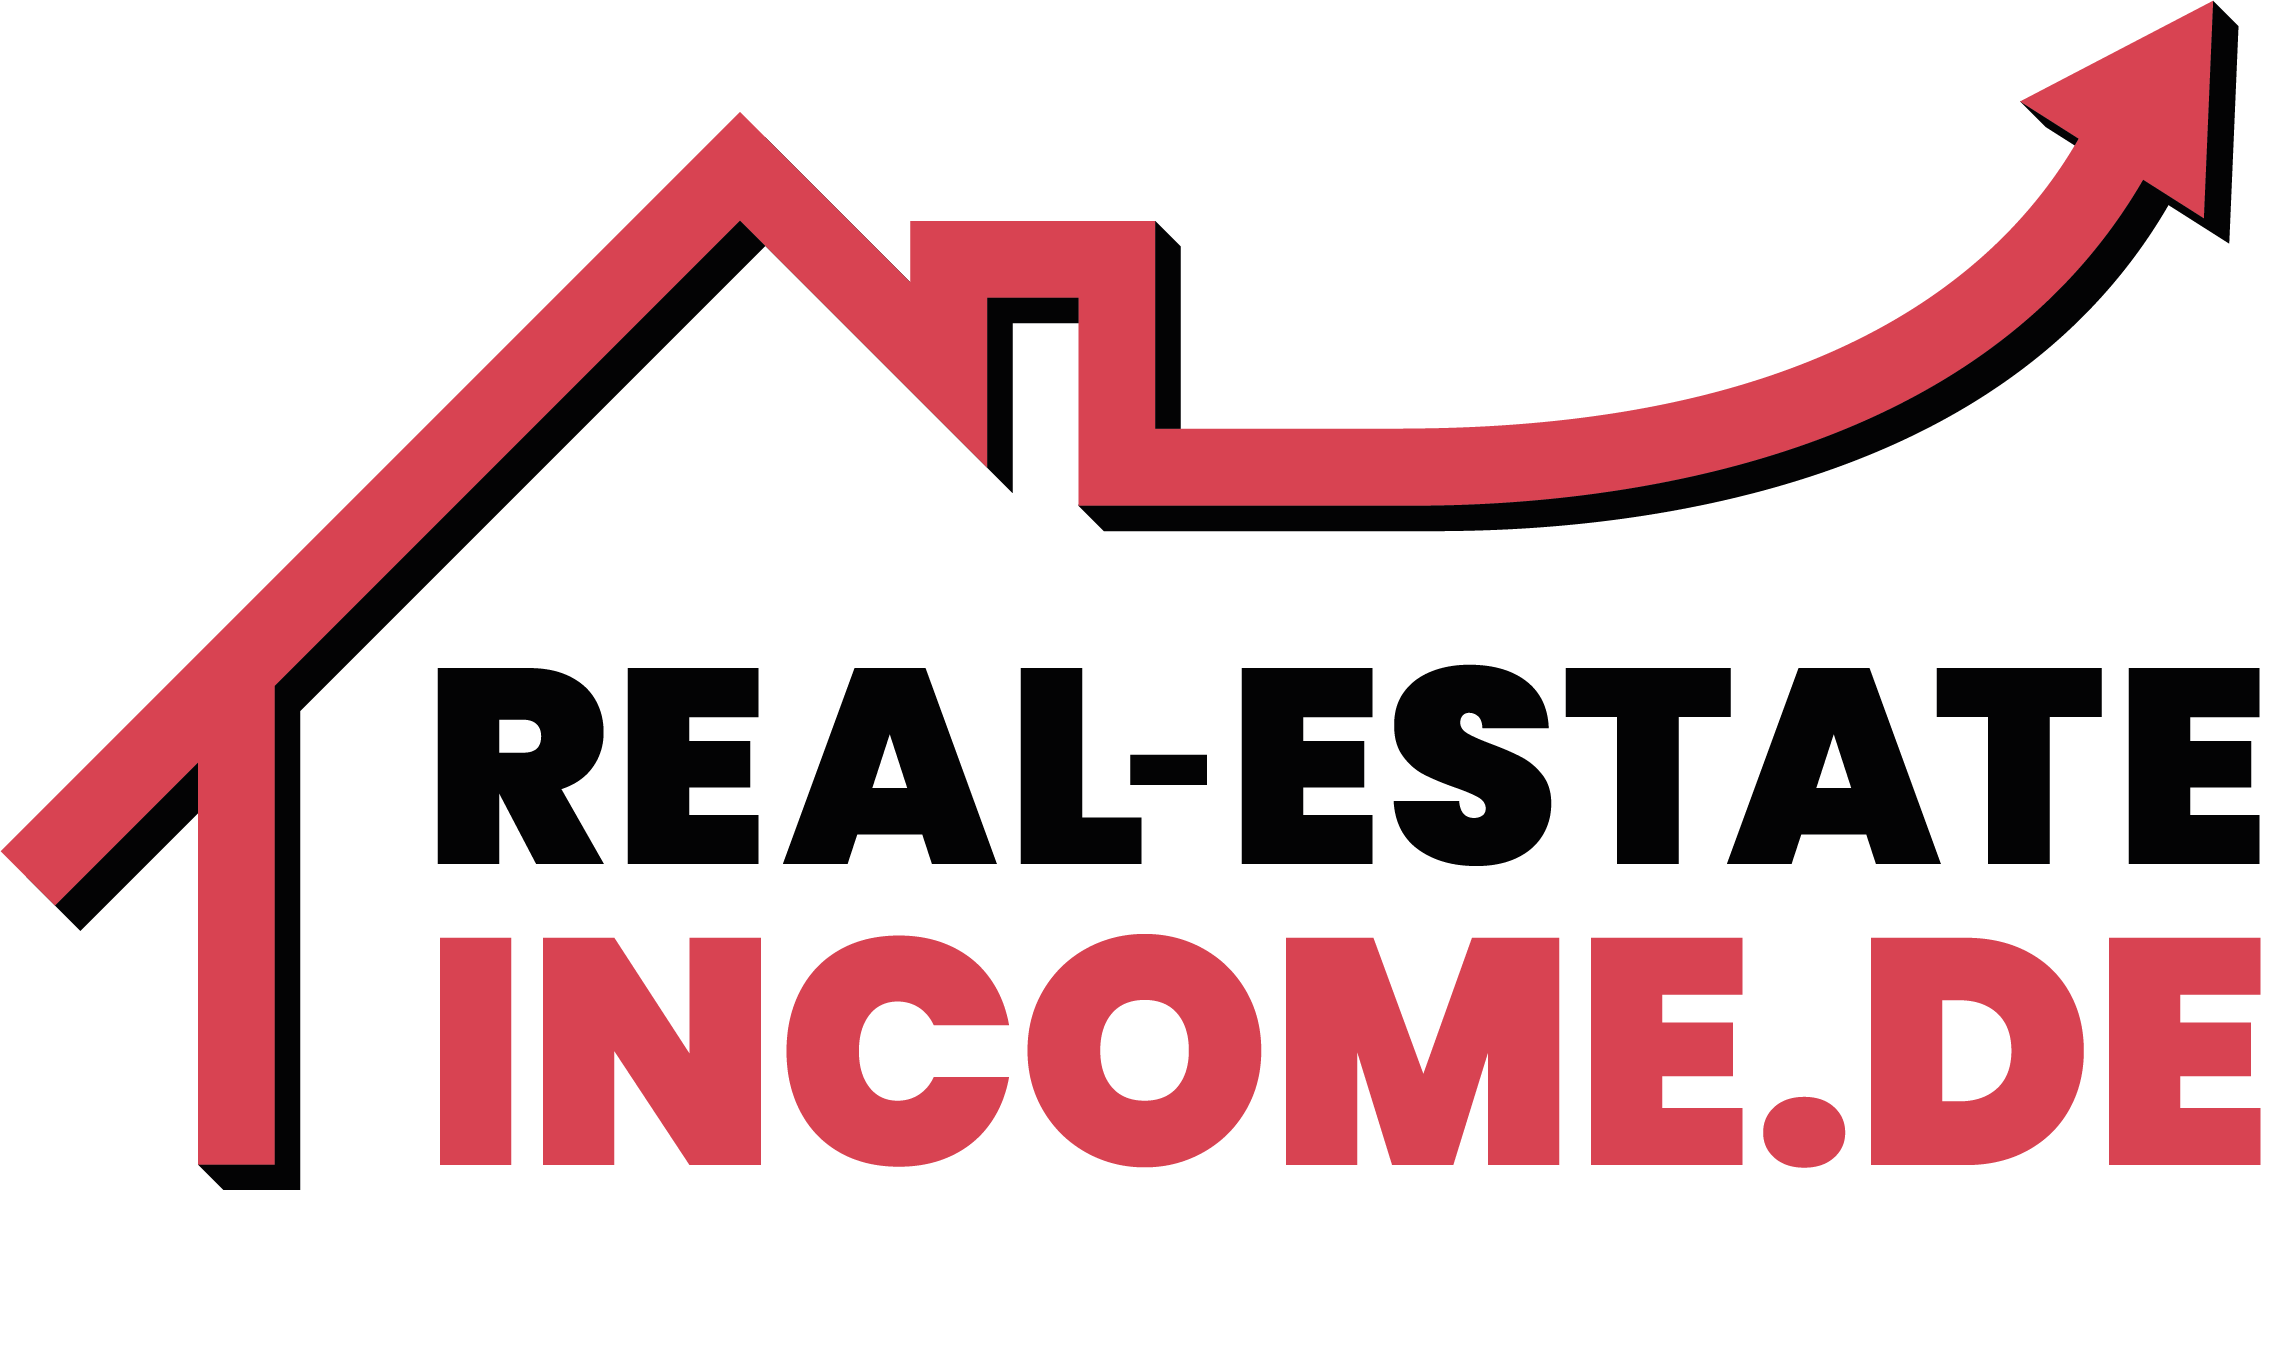 Real estate income